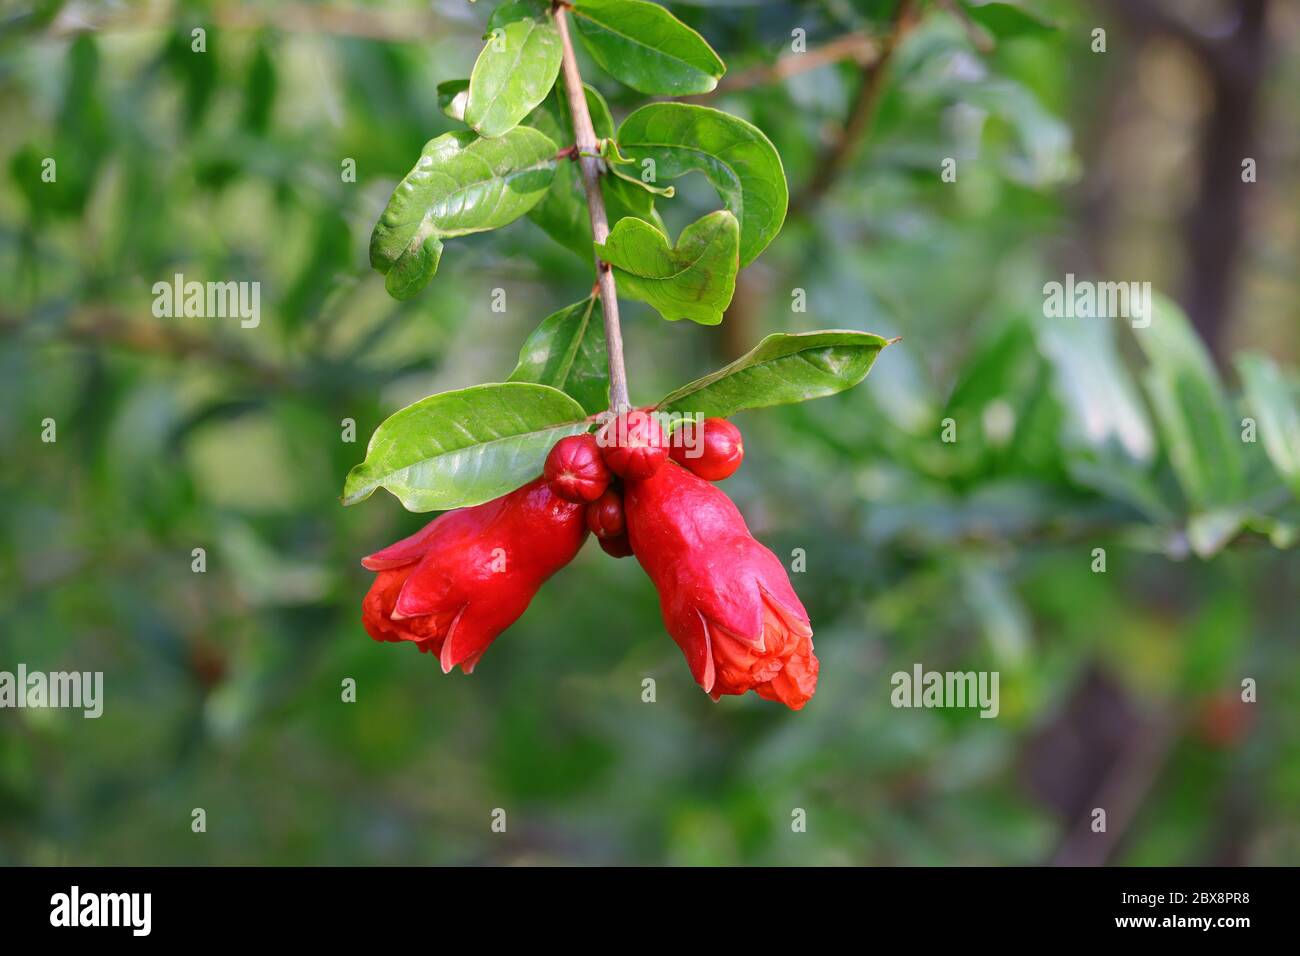 Photographie de fleurs de grenade, image HD de fond, fleur de grenade sur arbre Banque D'Images